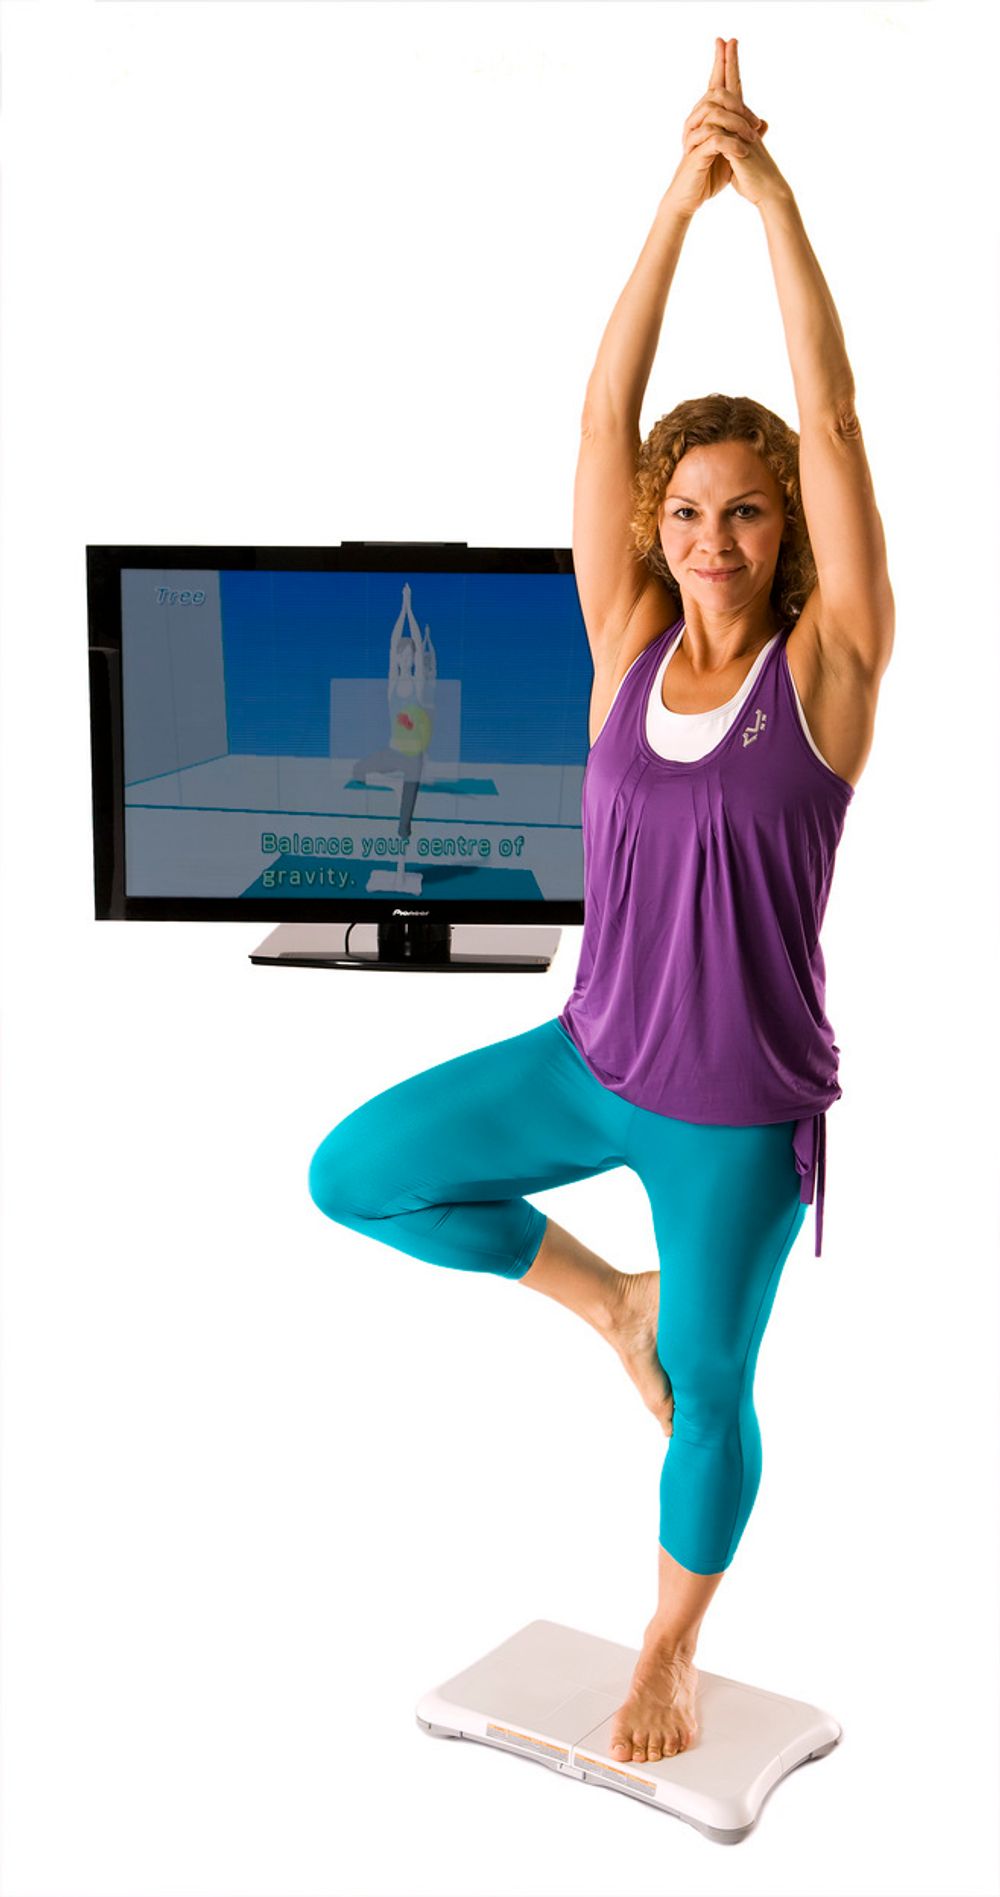 Yoga er blant aktivitetene Wii Fit byr på. Og du får kyndig veiledning fra din virtuelle trener.